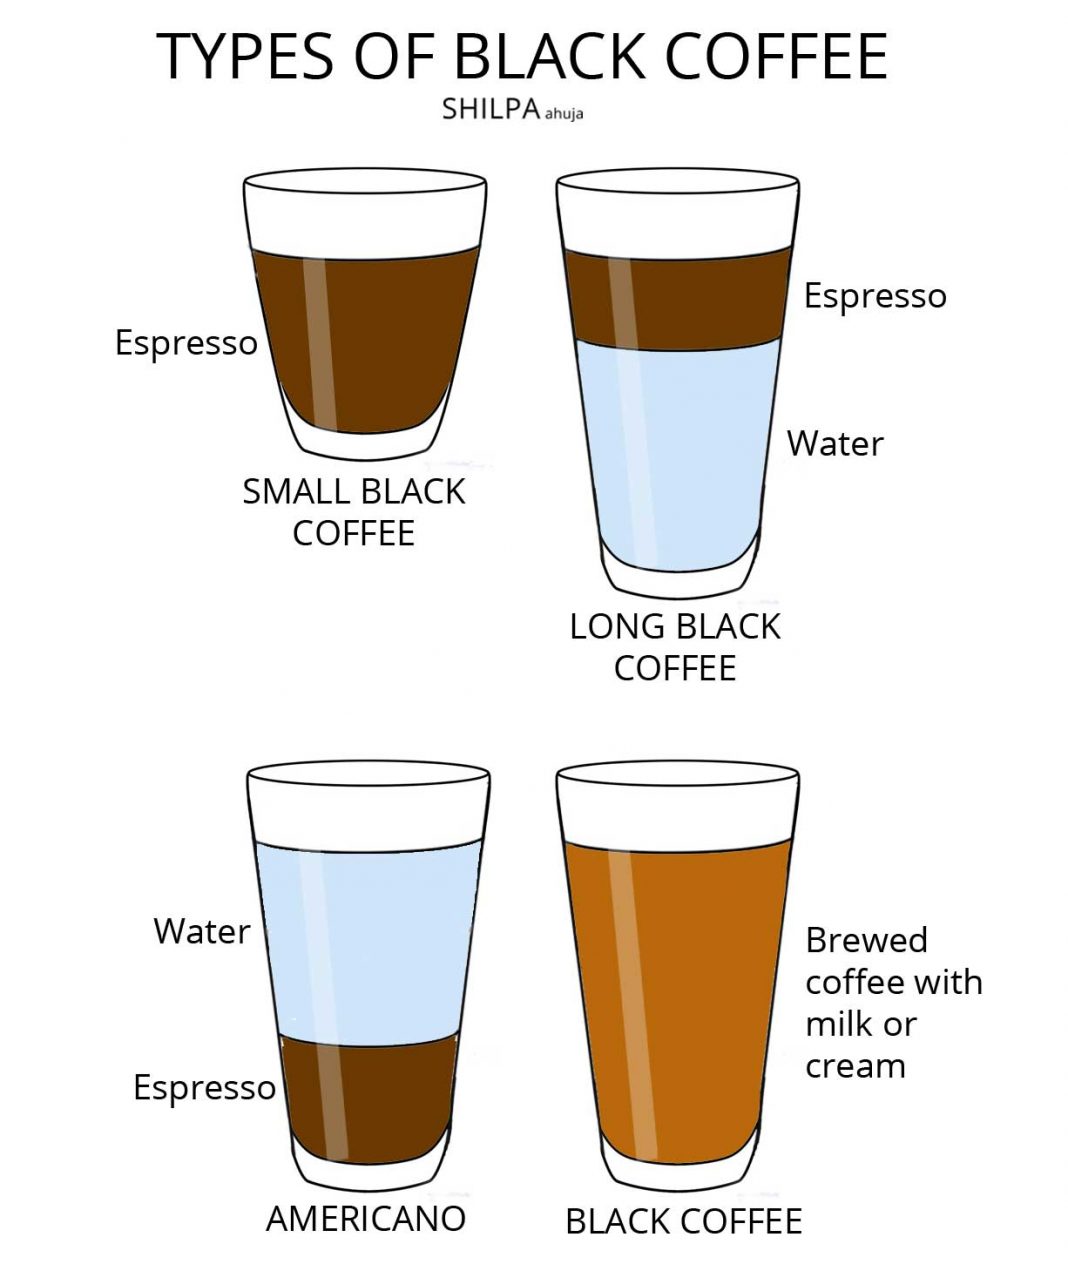 espresso vs lungo nespresso reddit for latte